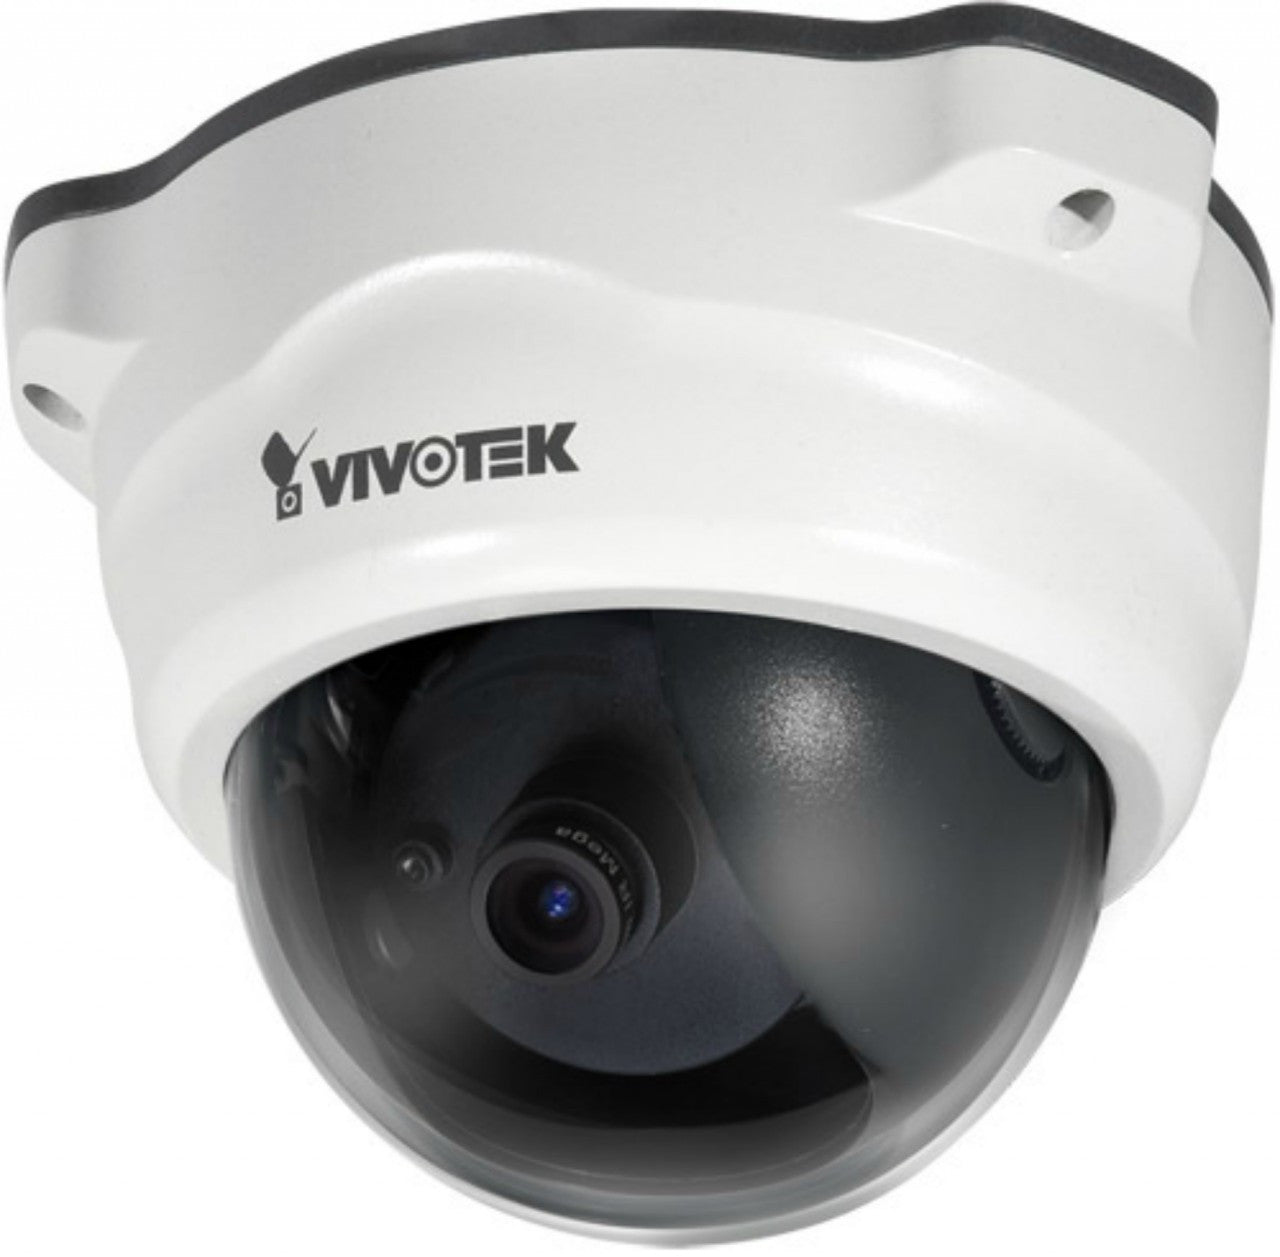 Vivotek FD8133V Vandal Proof H.264 MP Dome Network IP Camera